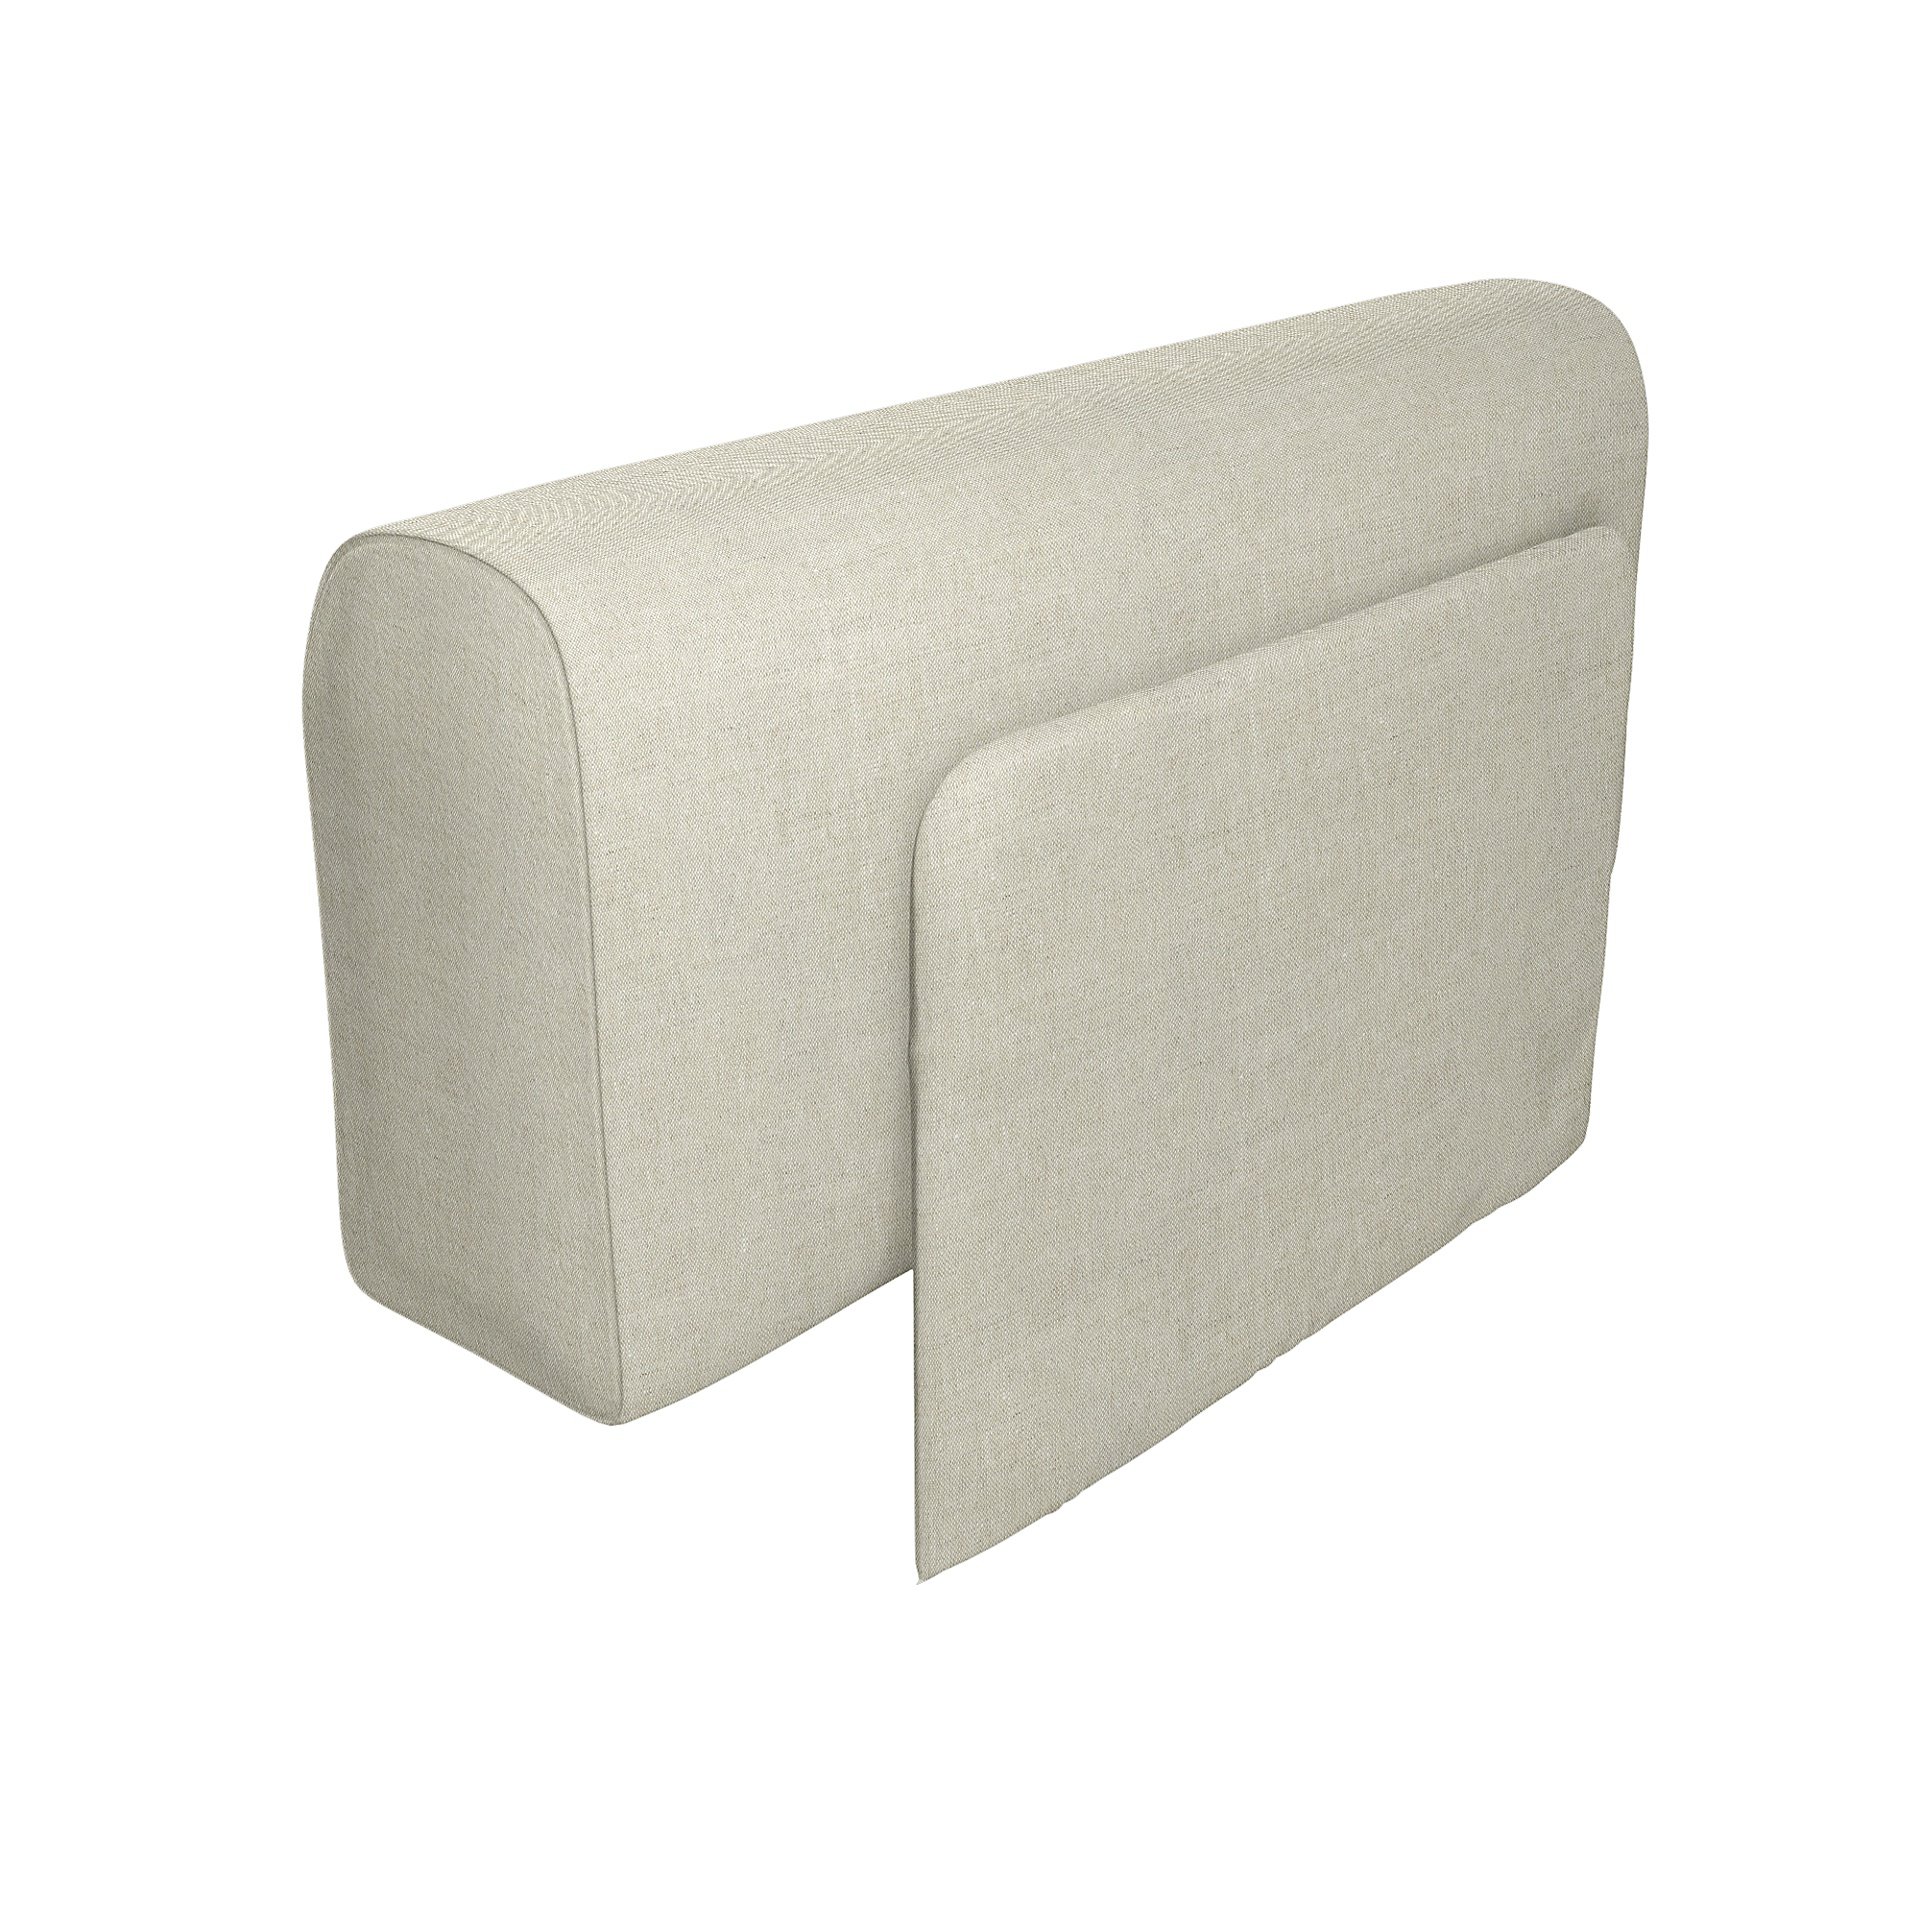 IKEA - Delaktig Armrest with Cushion Cover, Natural, Linen - Bemz